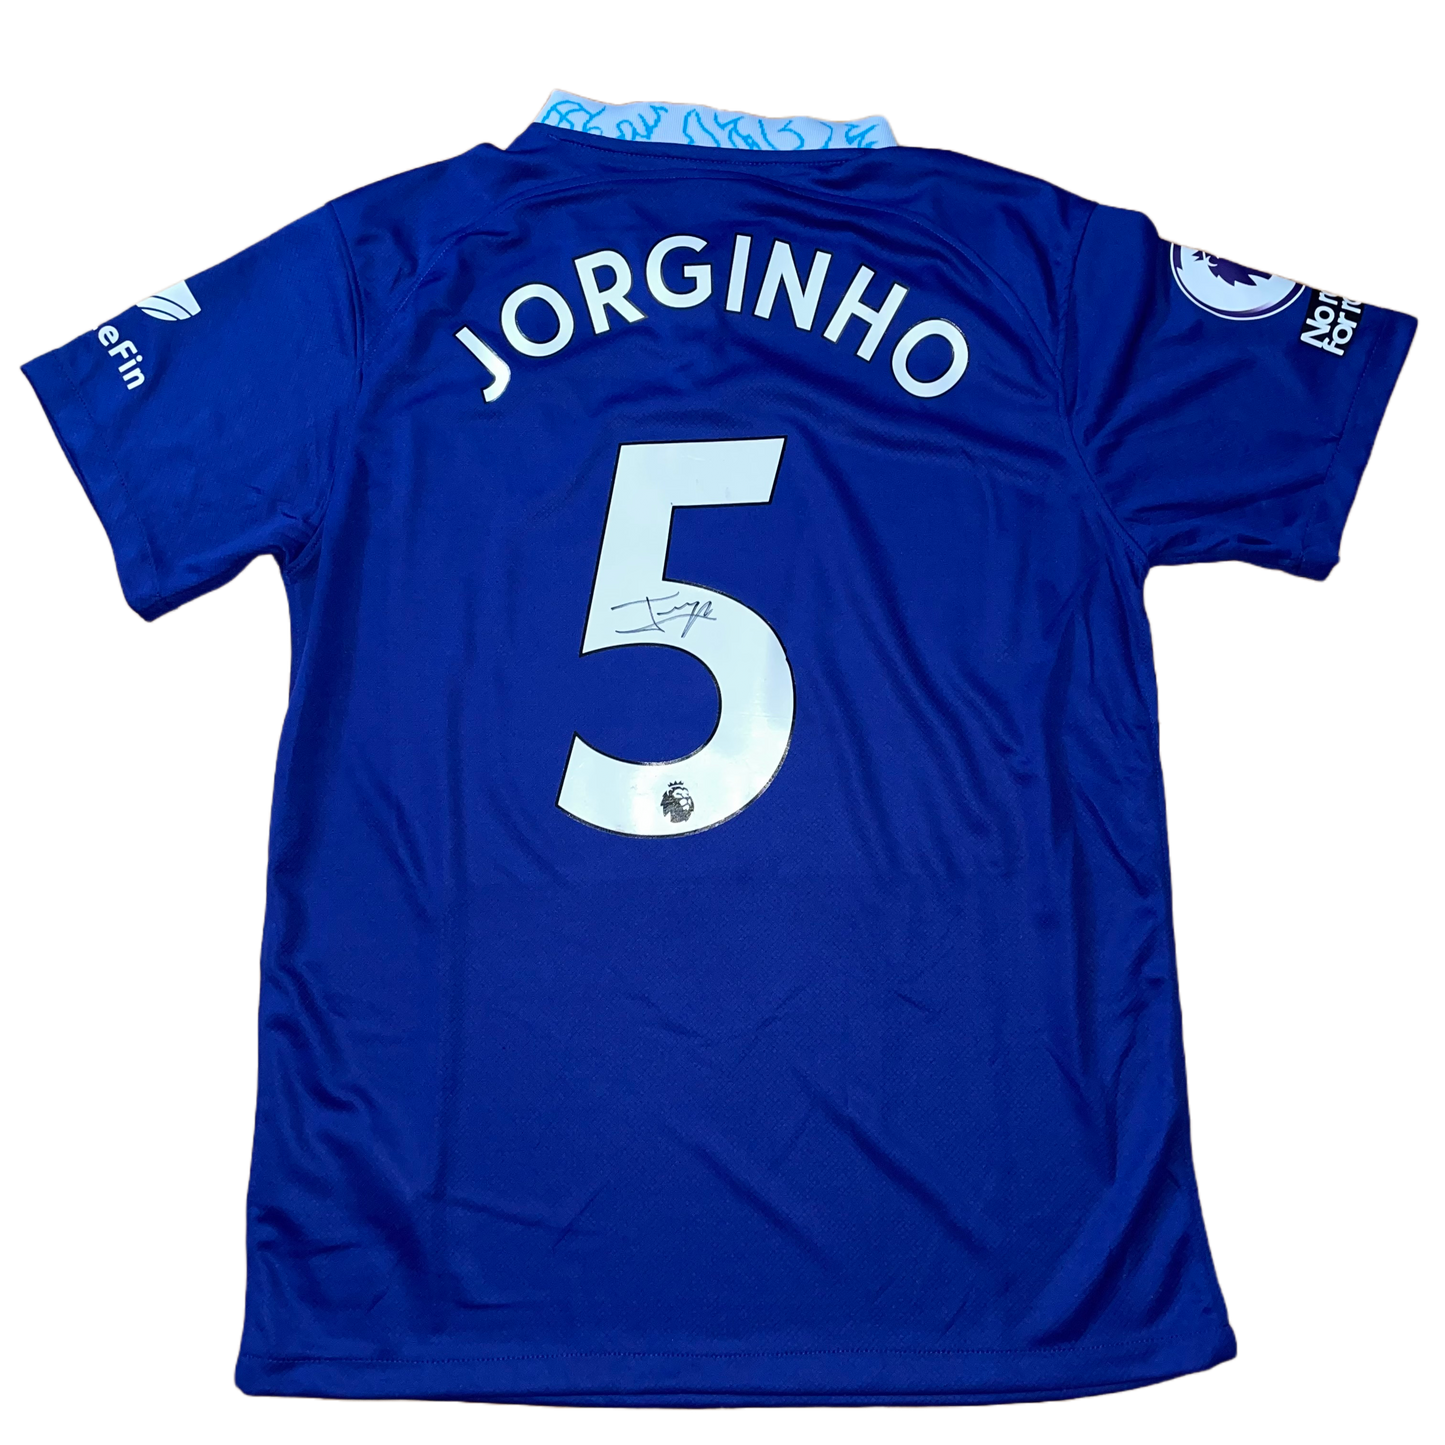 Signed Jorginho Chelsea Home Shirt 22/23